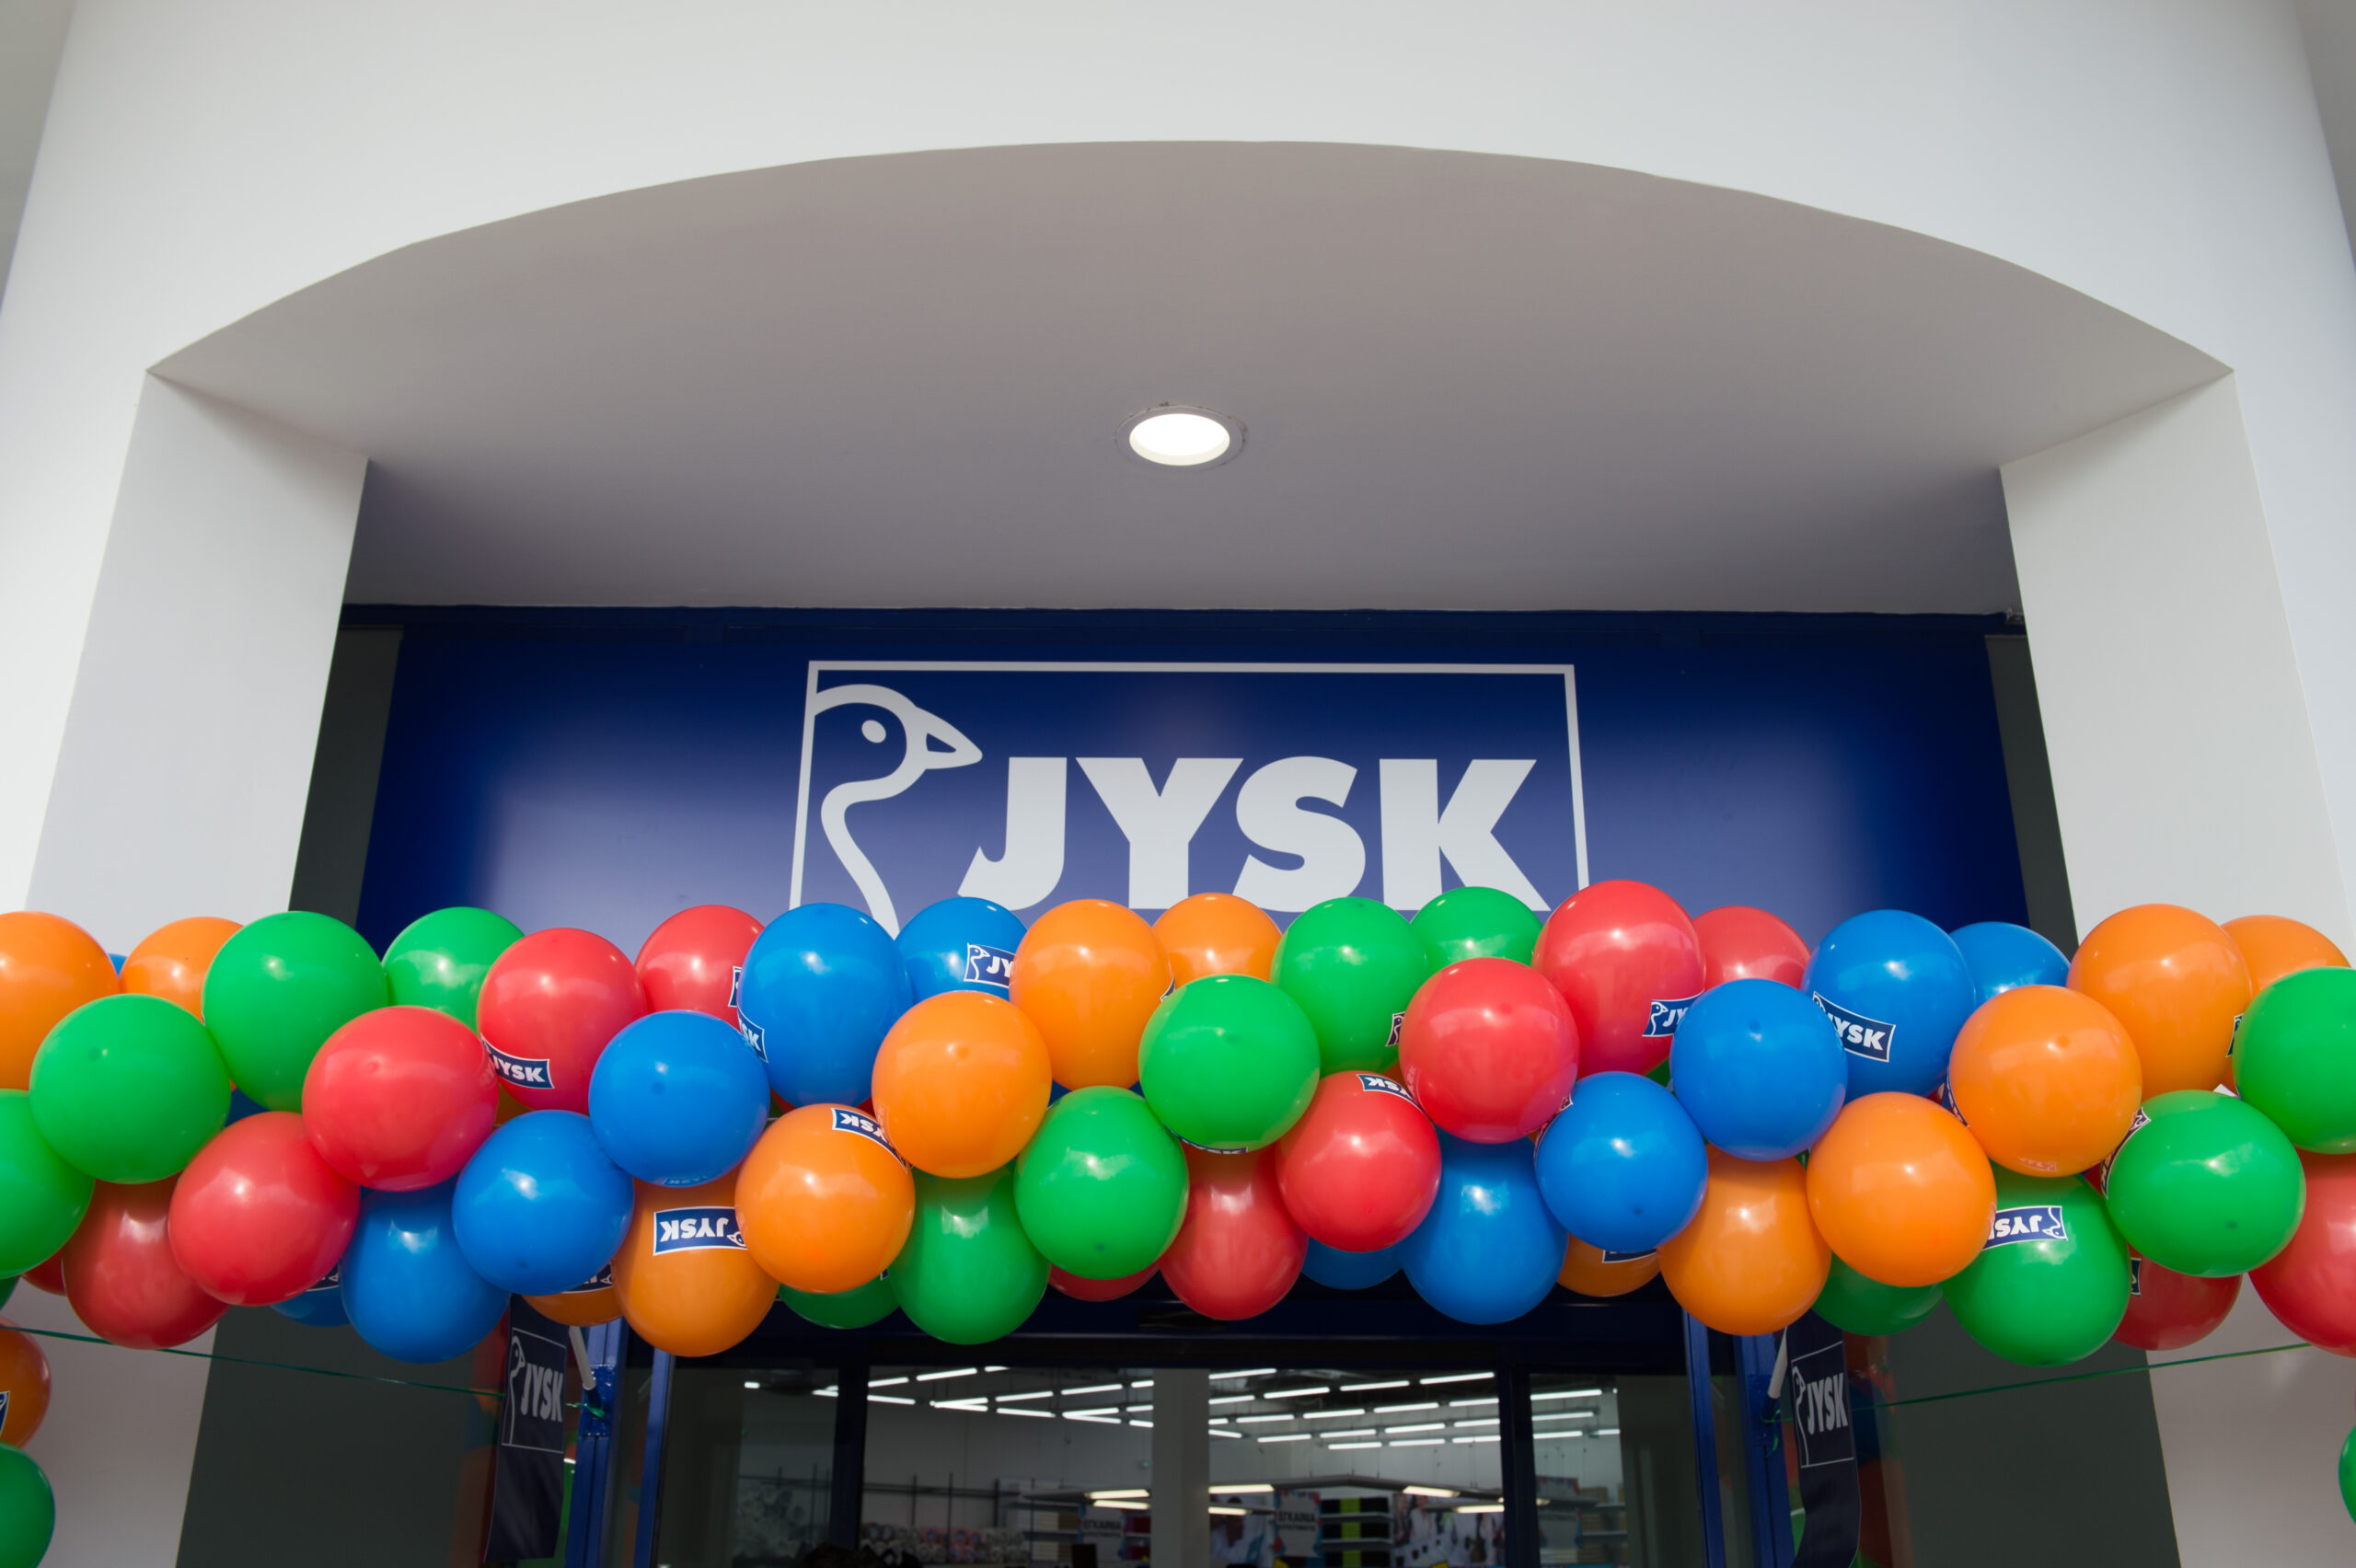 Νέο κατάστημα JYSK στο Άργος – Ανοίγει την Πέμπτη 8 Απριλίου με Click in Shop και Click & Collect